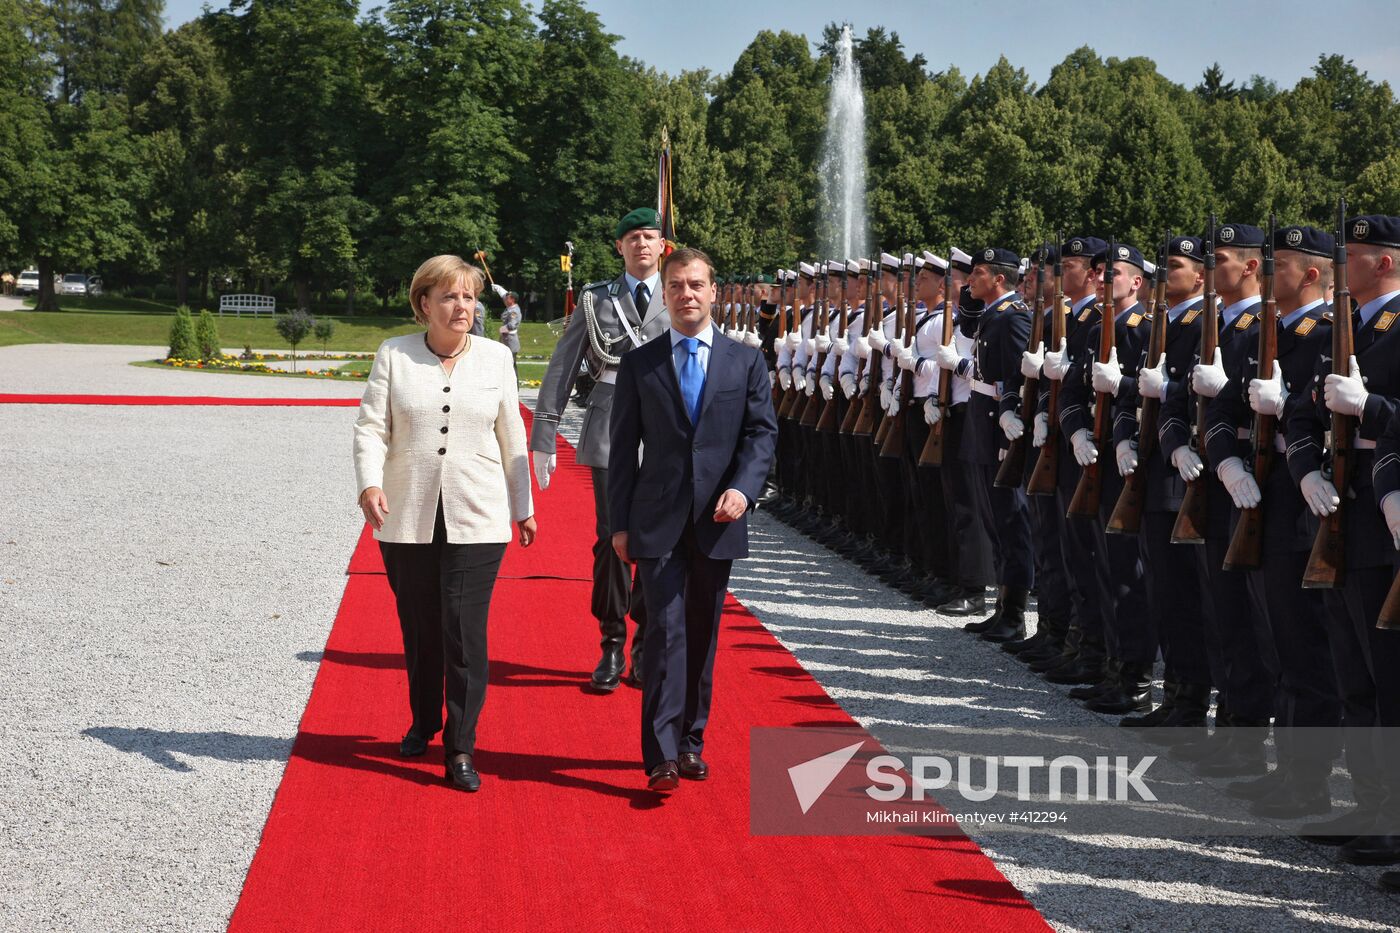 President Dmitry Medvedev visits Munich